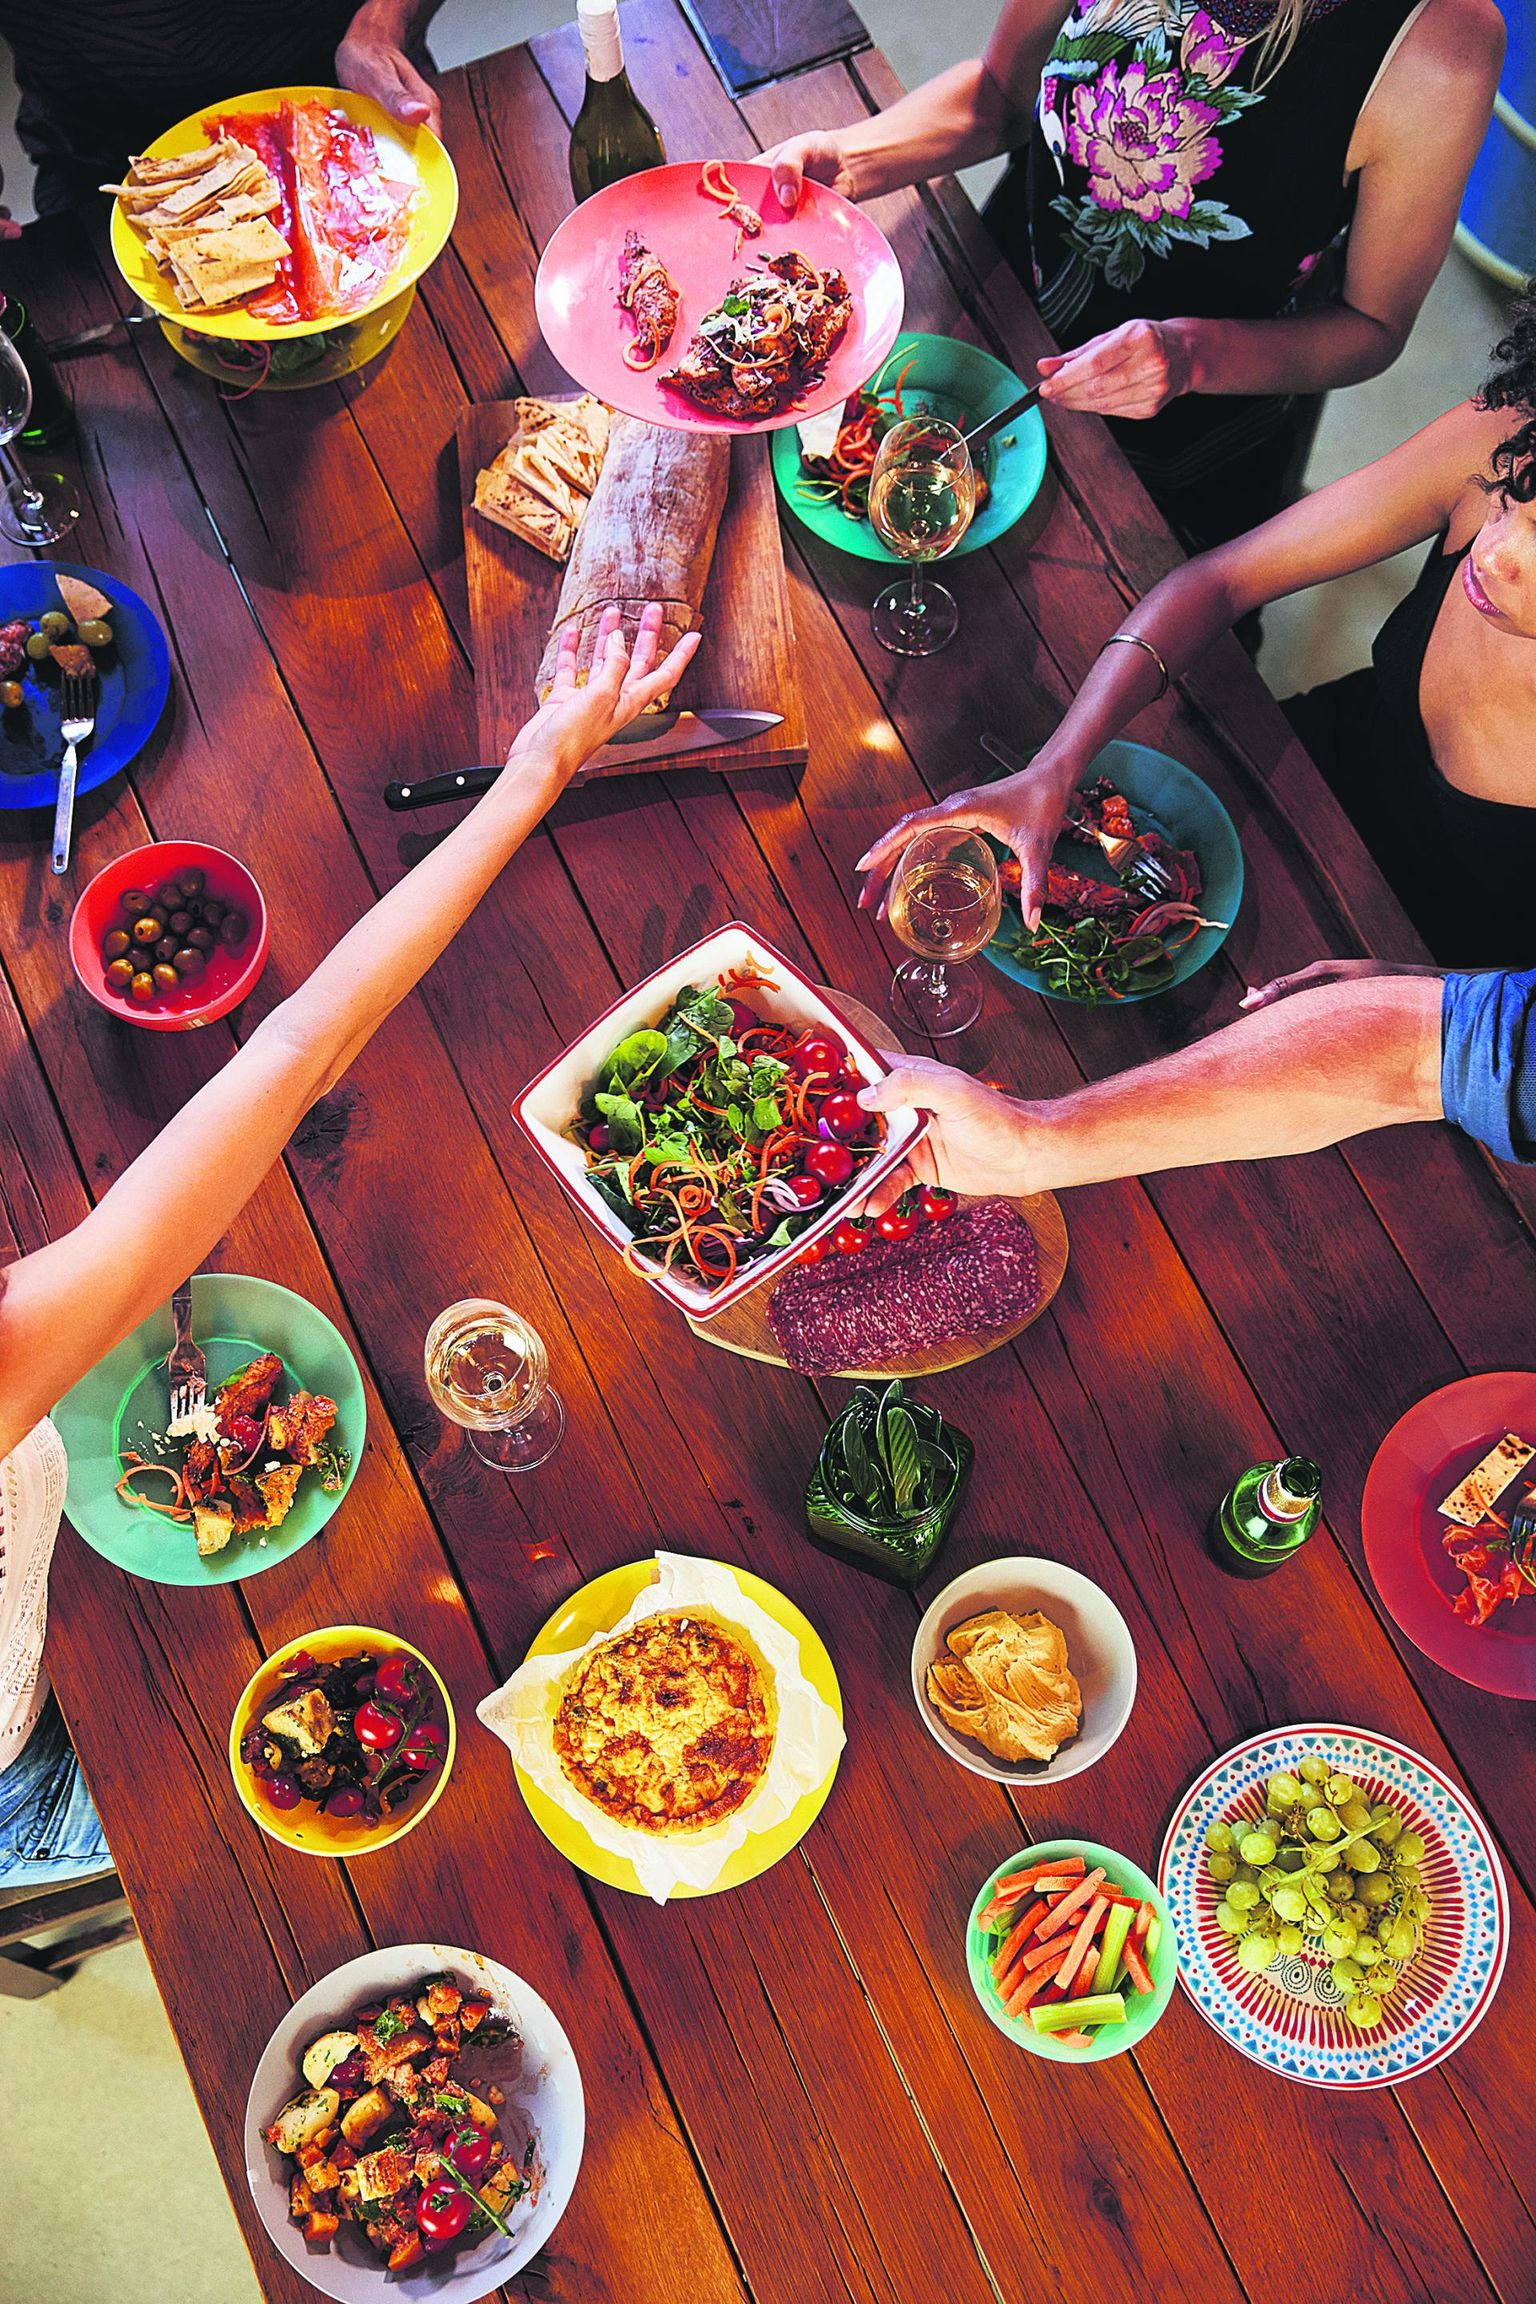 Toiduseiklus: õhtusöögi võib restoranis kokku panna üksnes eelroavalikust.